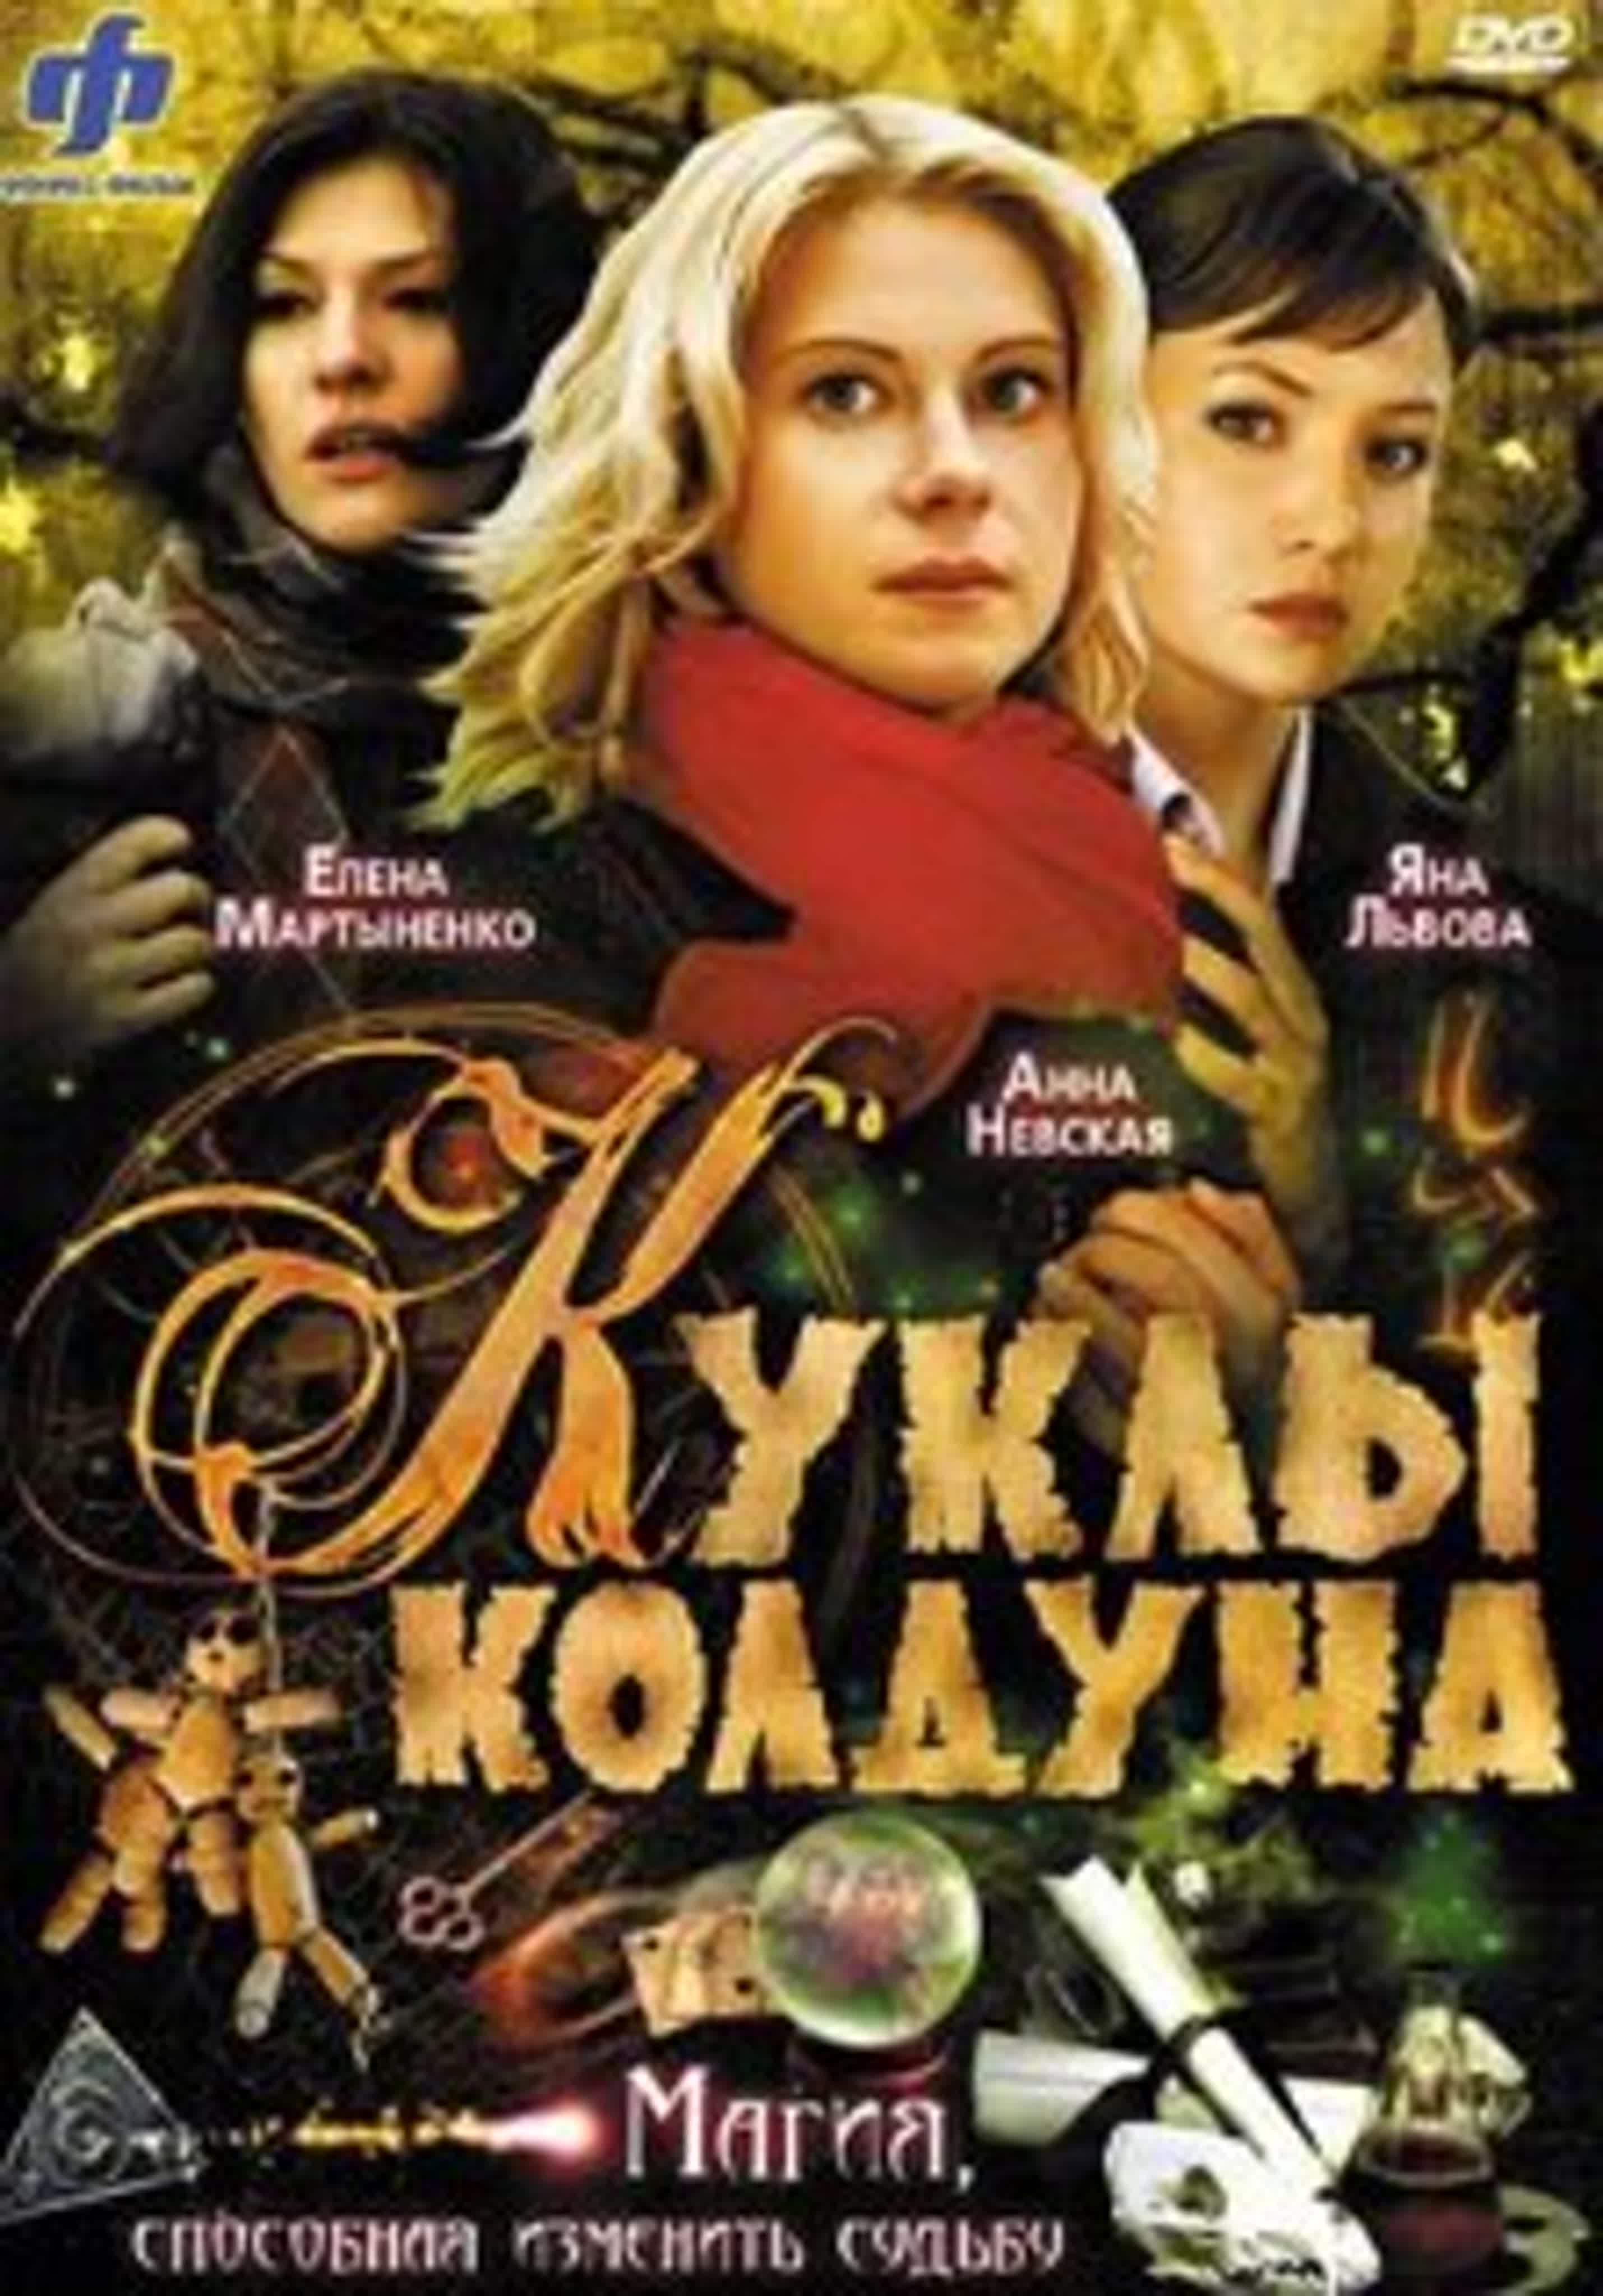 Куклы колдуна./Россия/2008/триллер, мелодрама